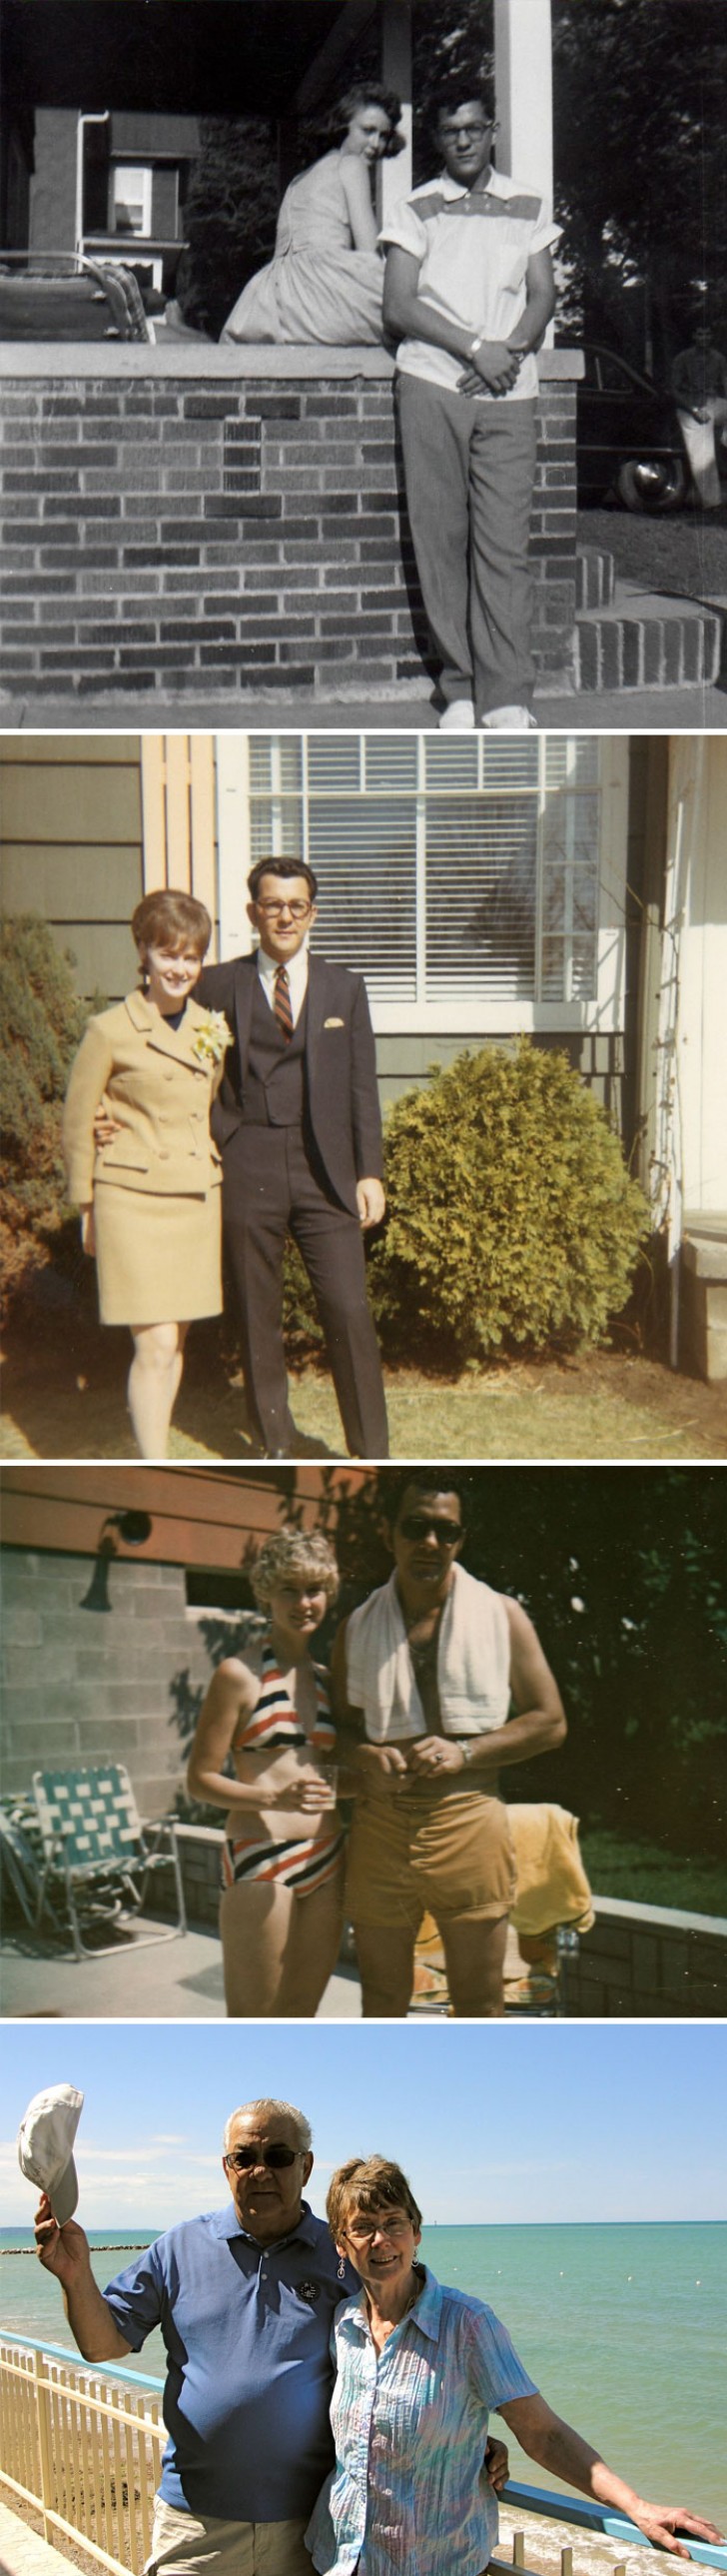 13. I miei nonni negli anni '50, '60, '70 e oggi.